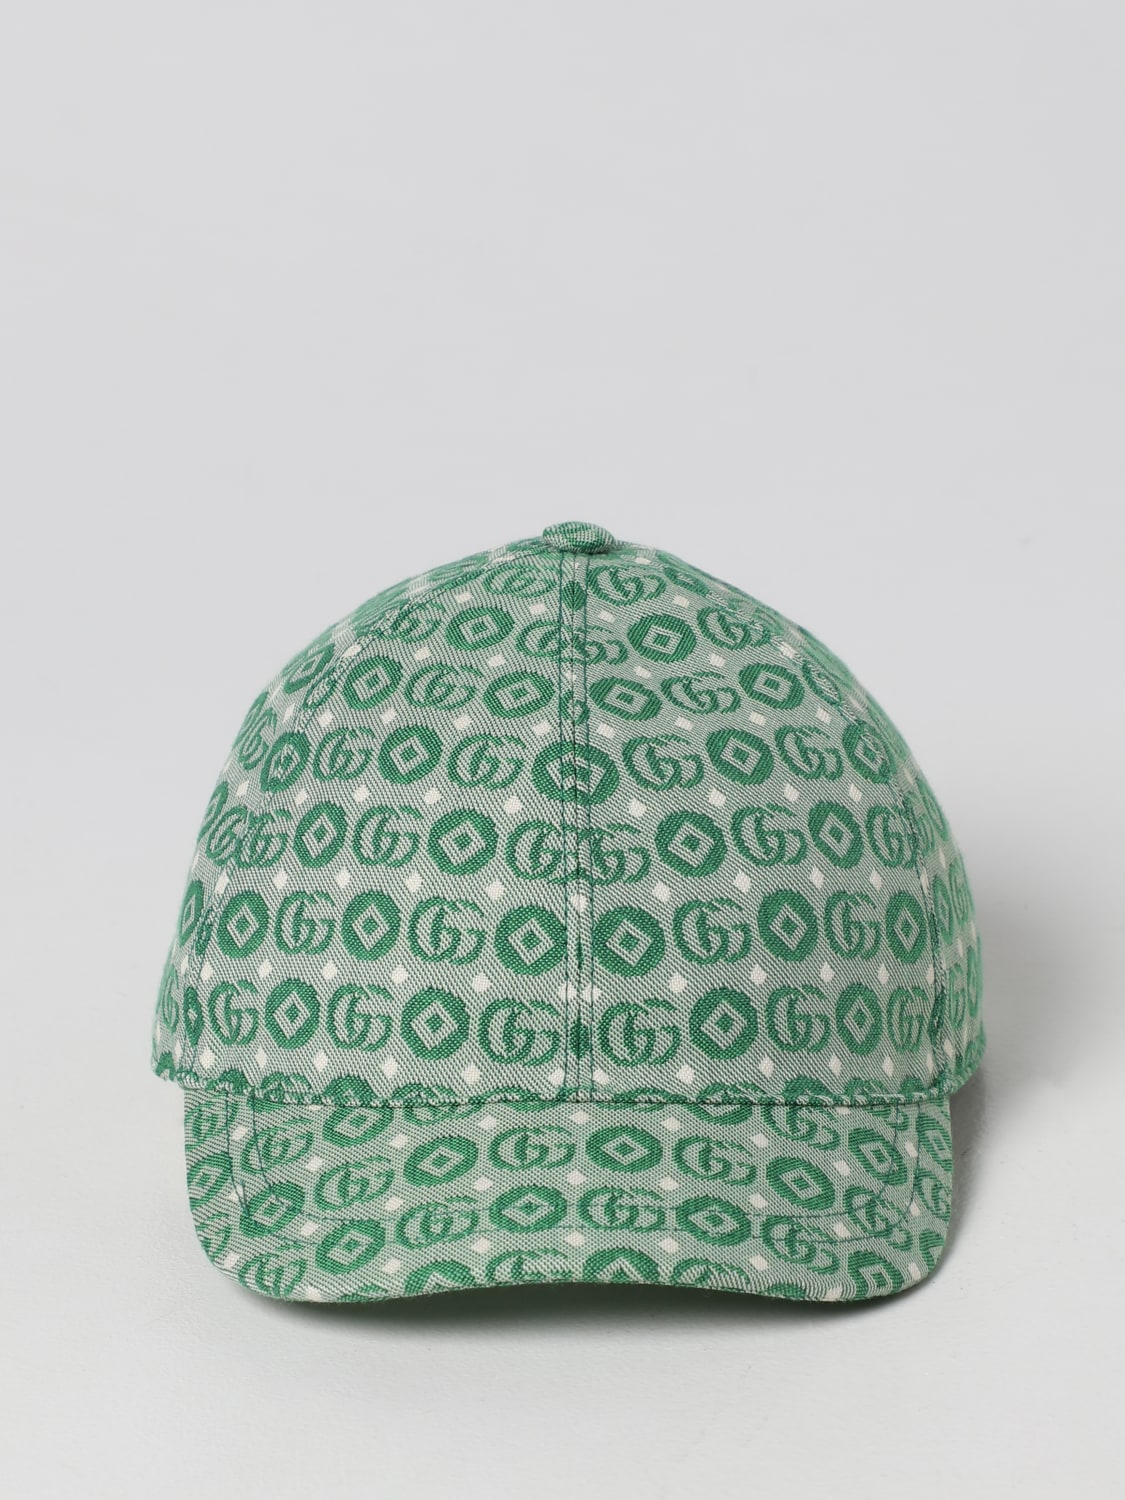 GUCCI： 帽子儿童- 薄荷绿| Gucci 帽子4817743HAQA 在线就在GIGLIO.COM